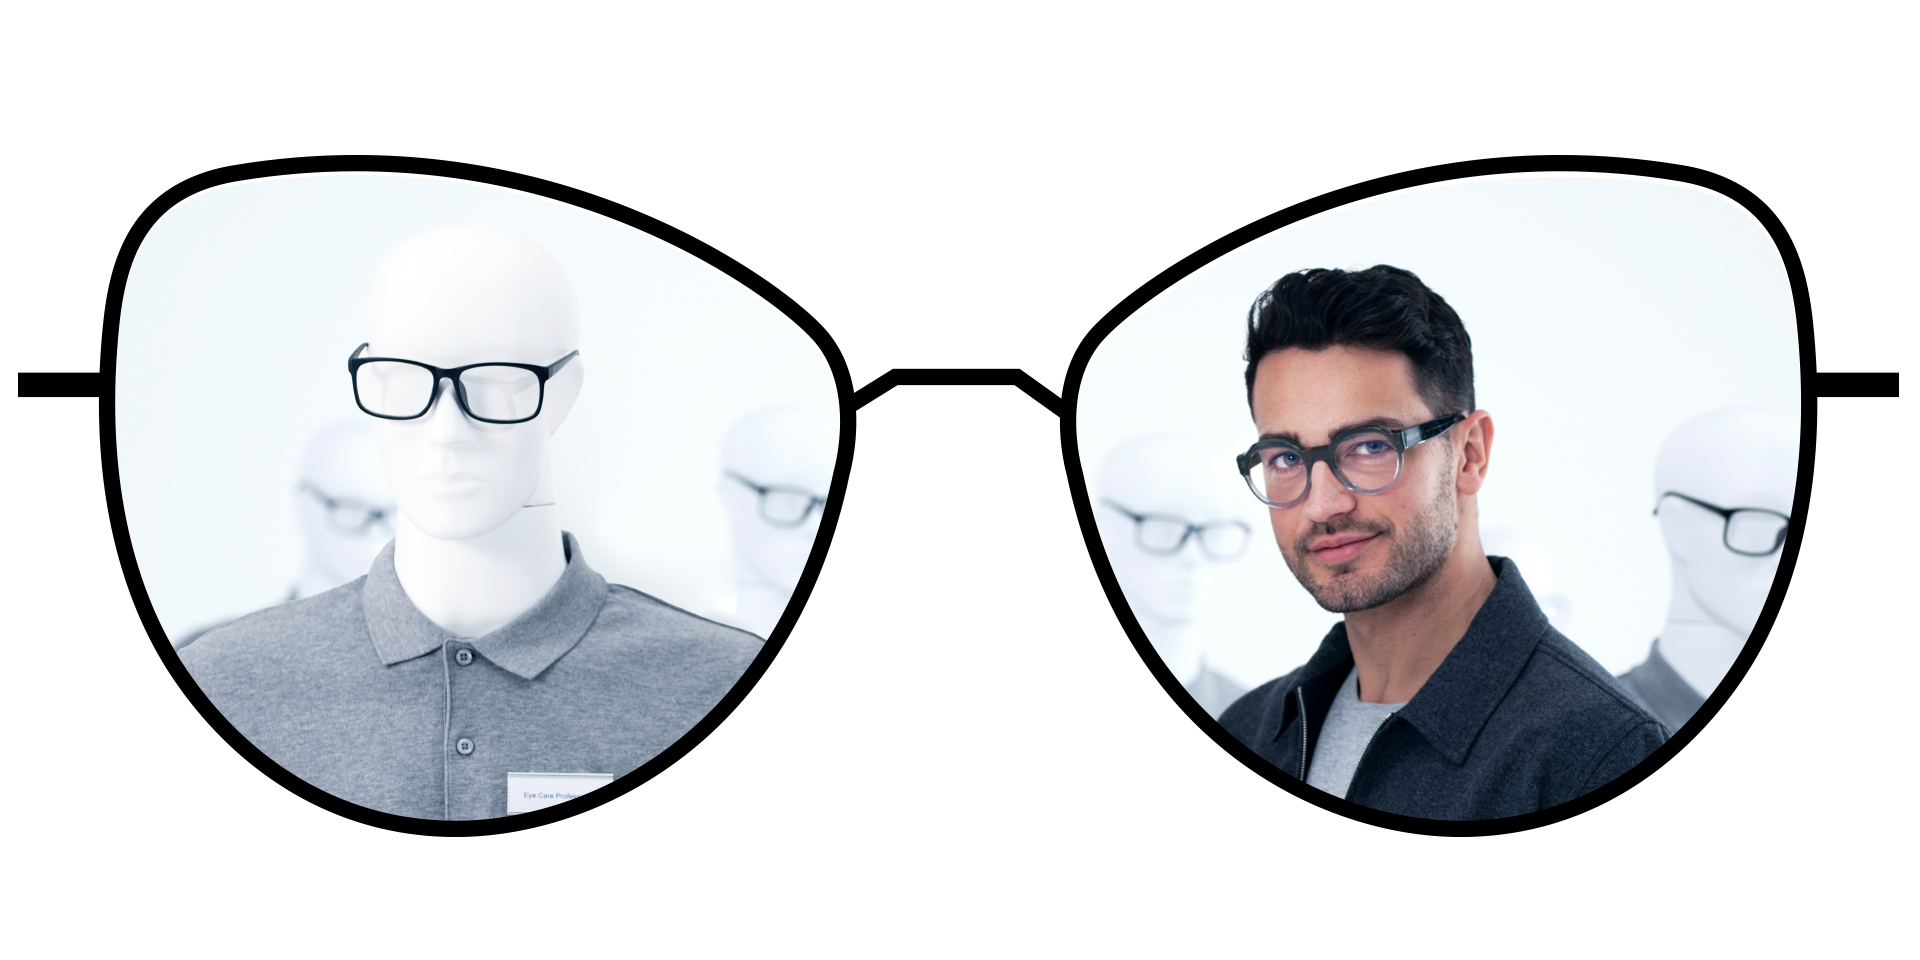 Bild av ett par glasögon som visar de suddiga zonerna i standardglas jämfört med de större klara zonerna i ZEISS ClearView enstyrkeglas.